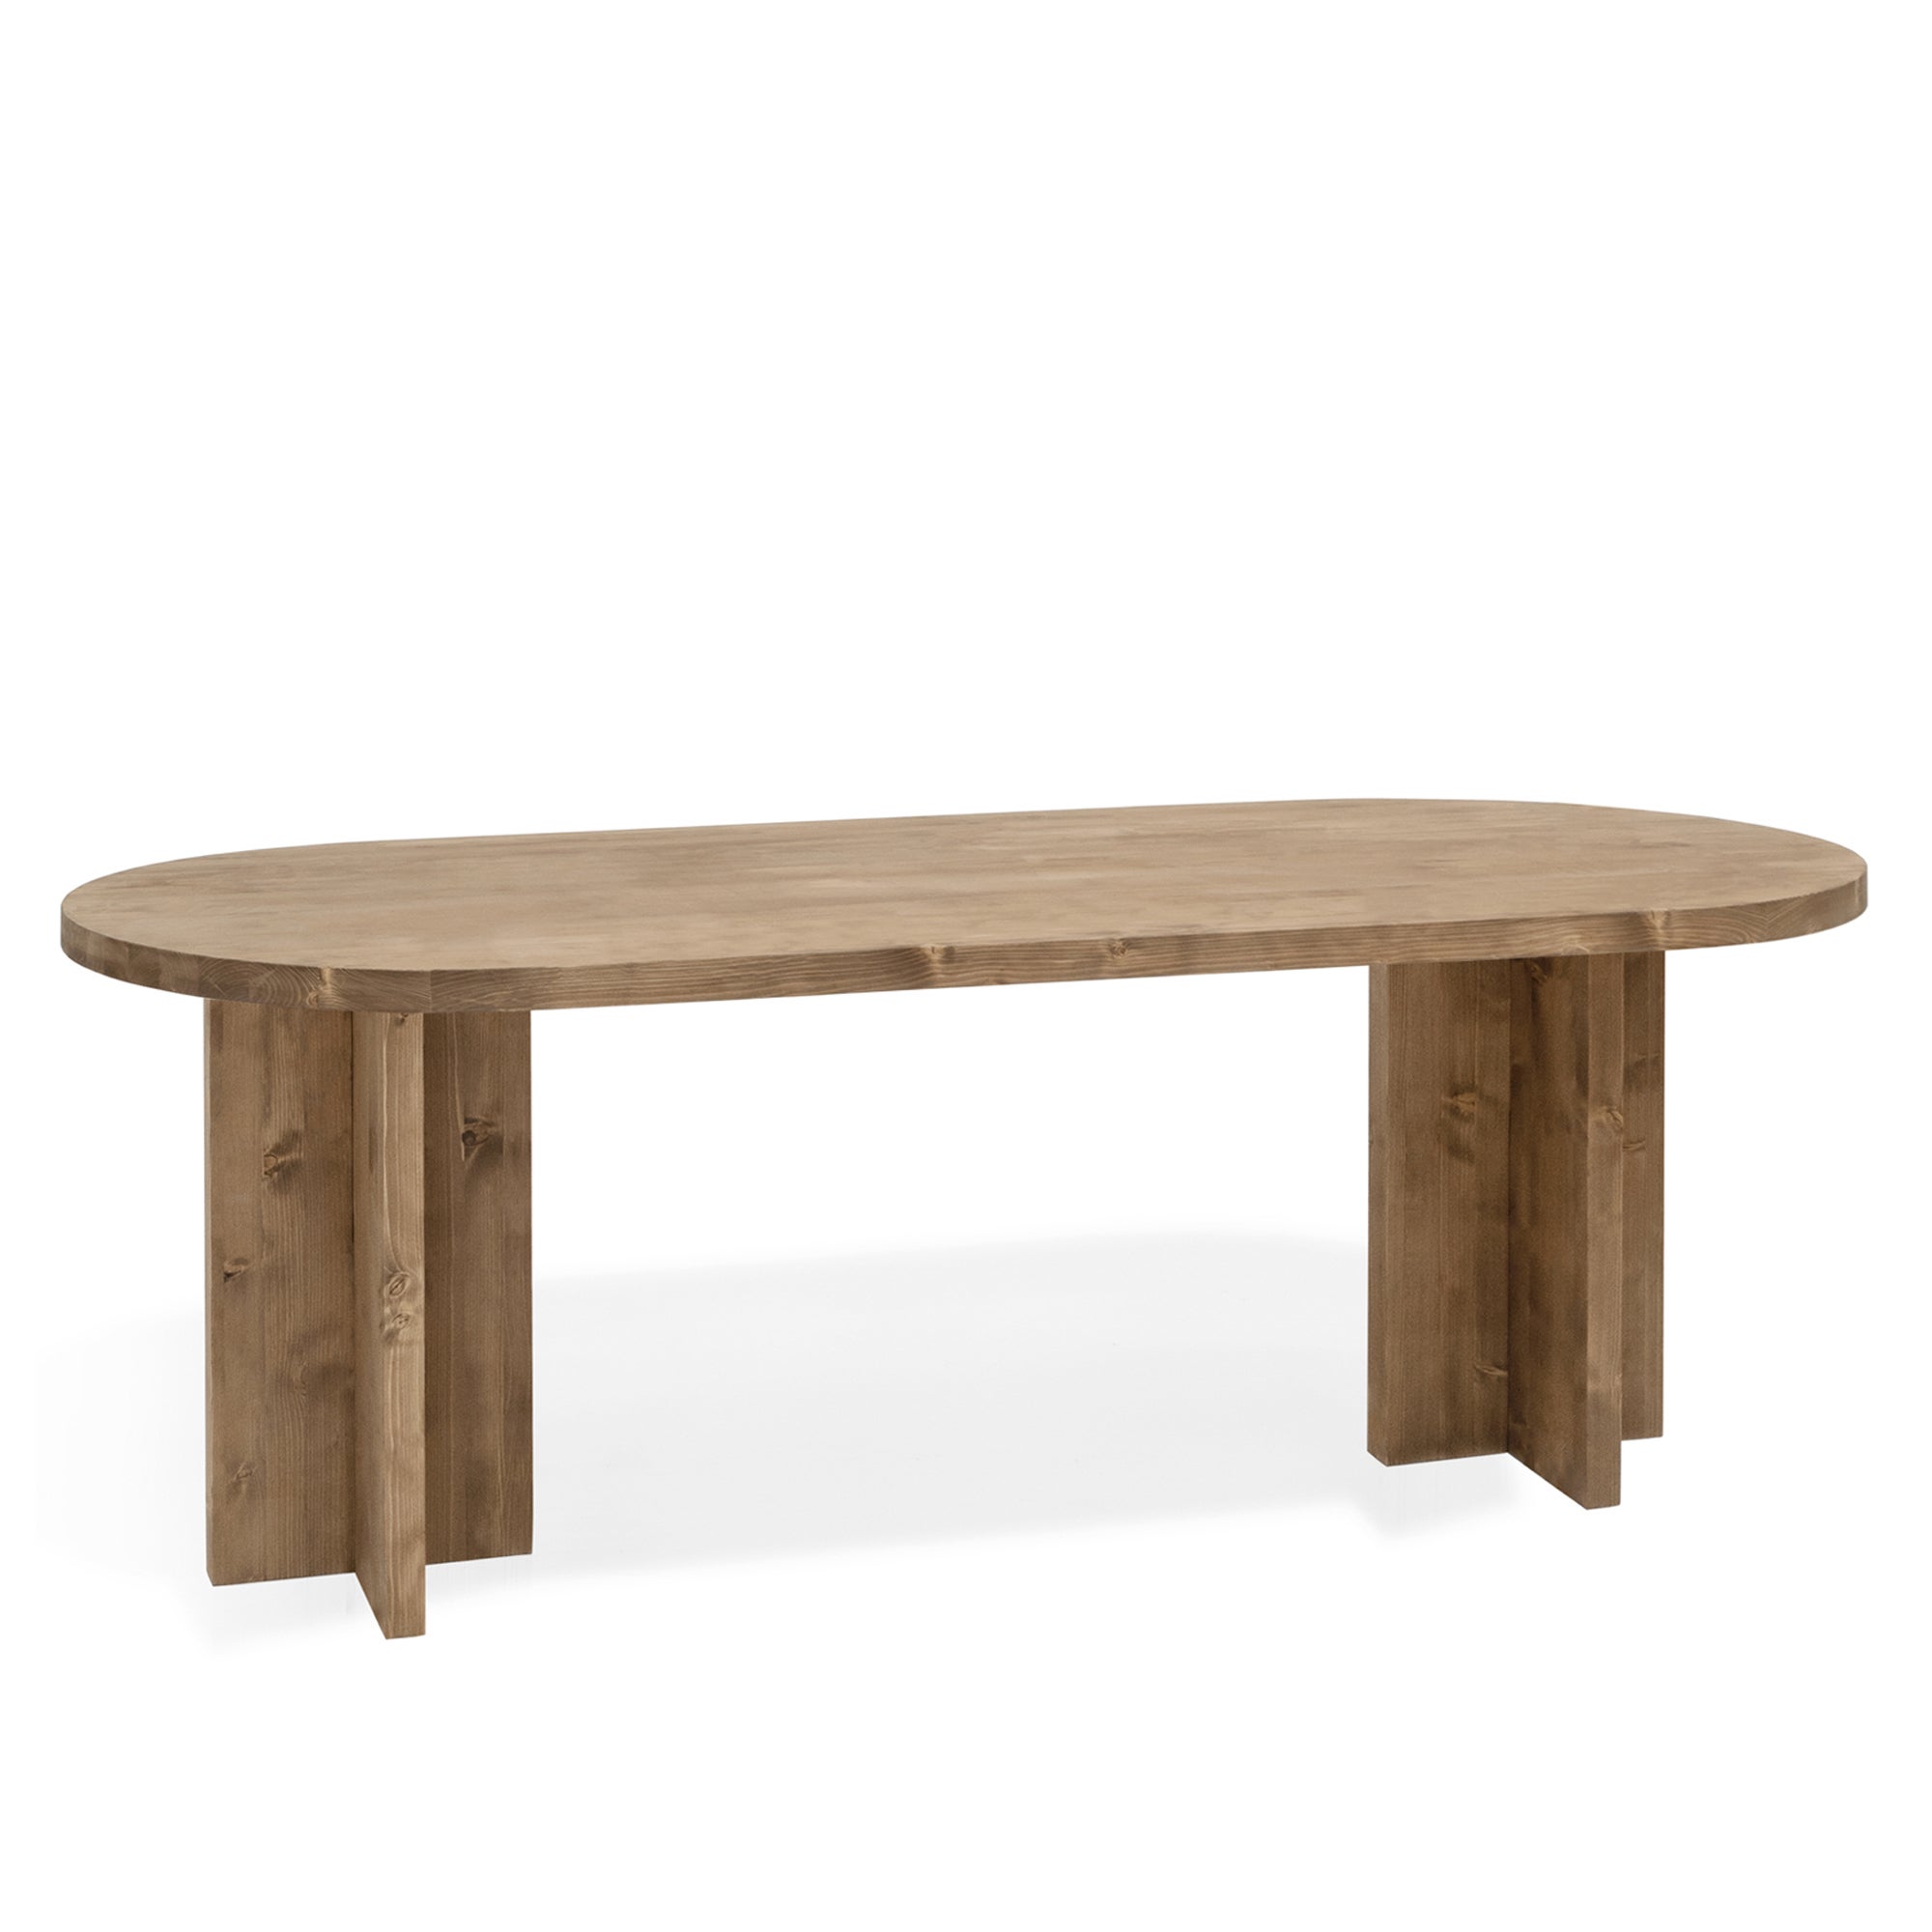 Table à manger ovale en bois massif ton chêne foncé 180x80cm